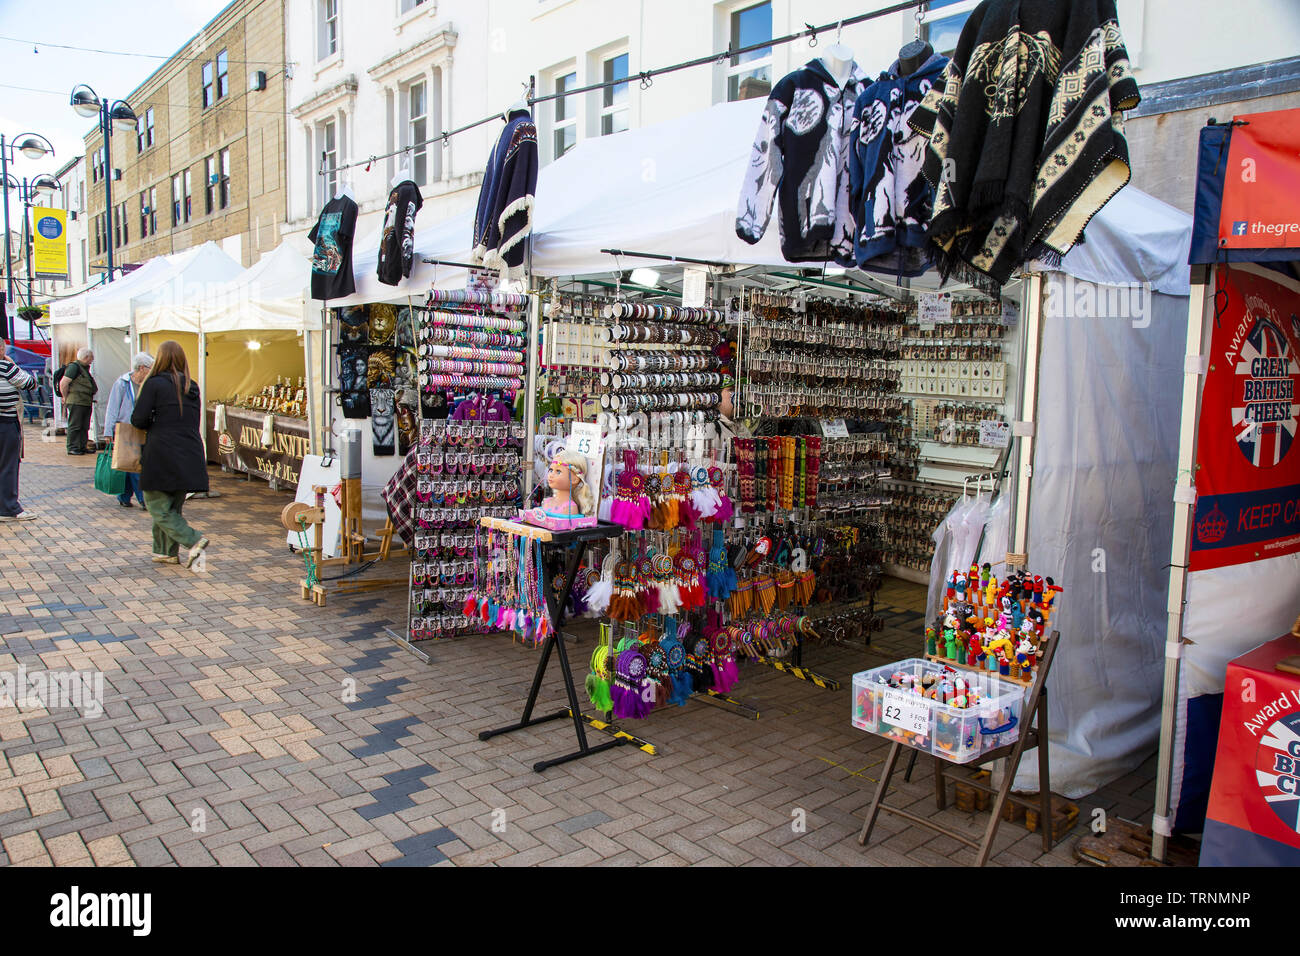 Open street market stall à vendre des babioles, bijoux, bracelets, bracelets et parures lors d'un événement de marché de rue dans le West Yorkshire Banque D'Images